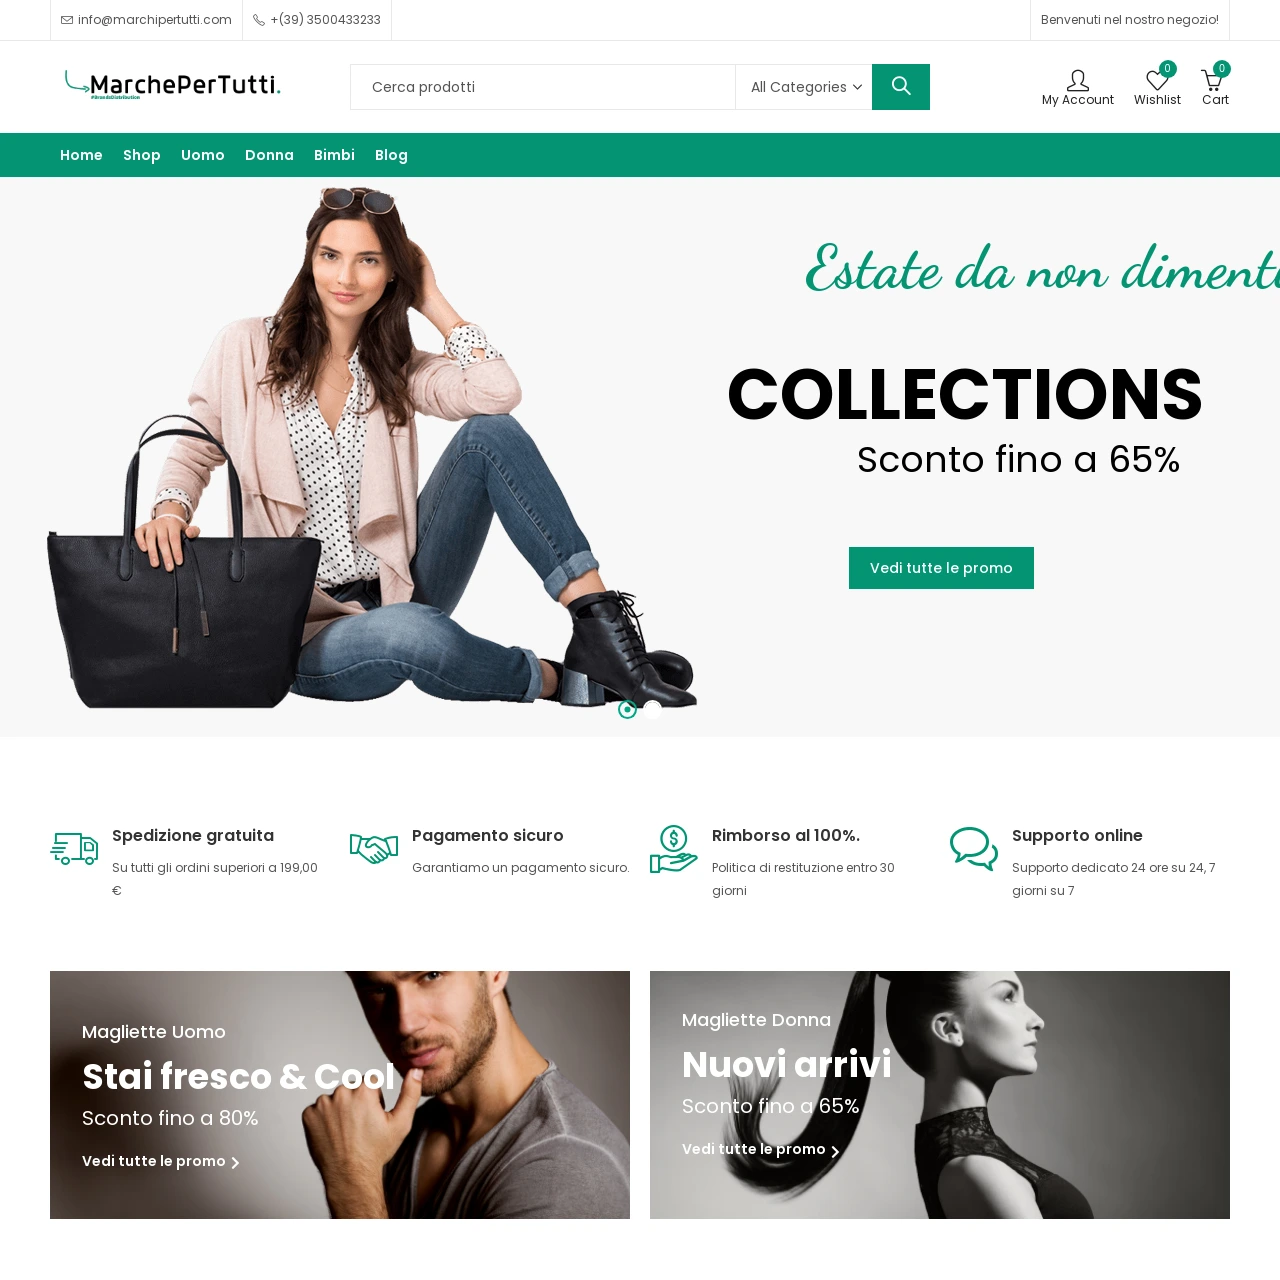 MarchePerTutti.com: Innovazione nell'E-commerce di Moda Italiana